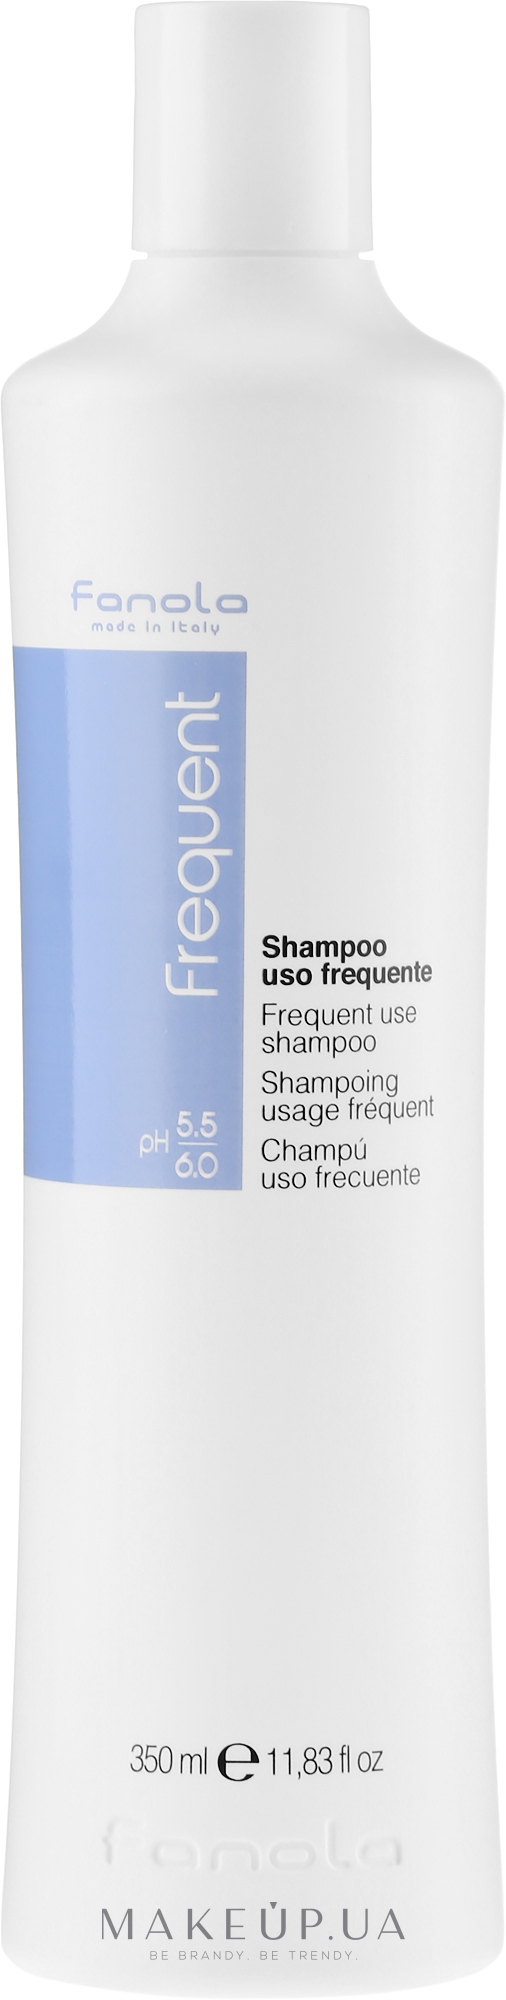 Шампунь для частого использования - Fanola Frequent Use Shampoo — фото 350ml